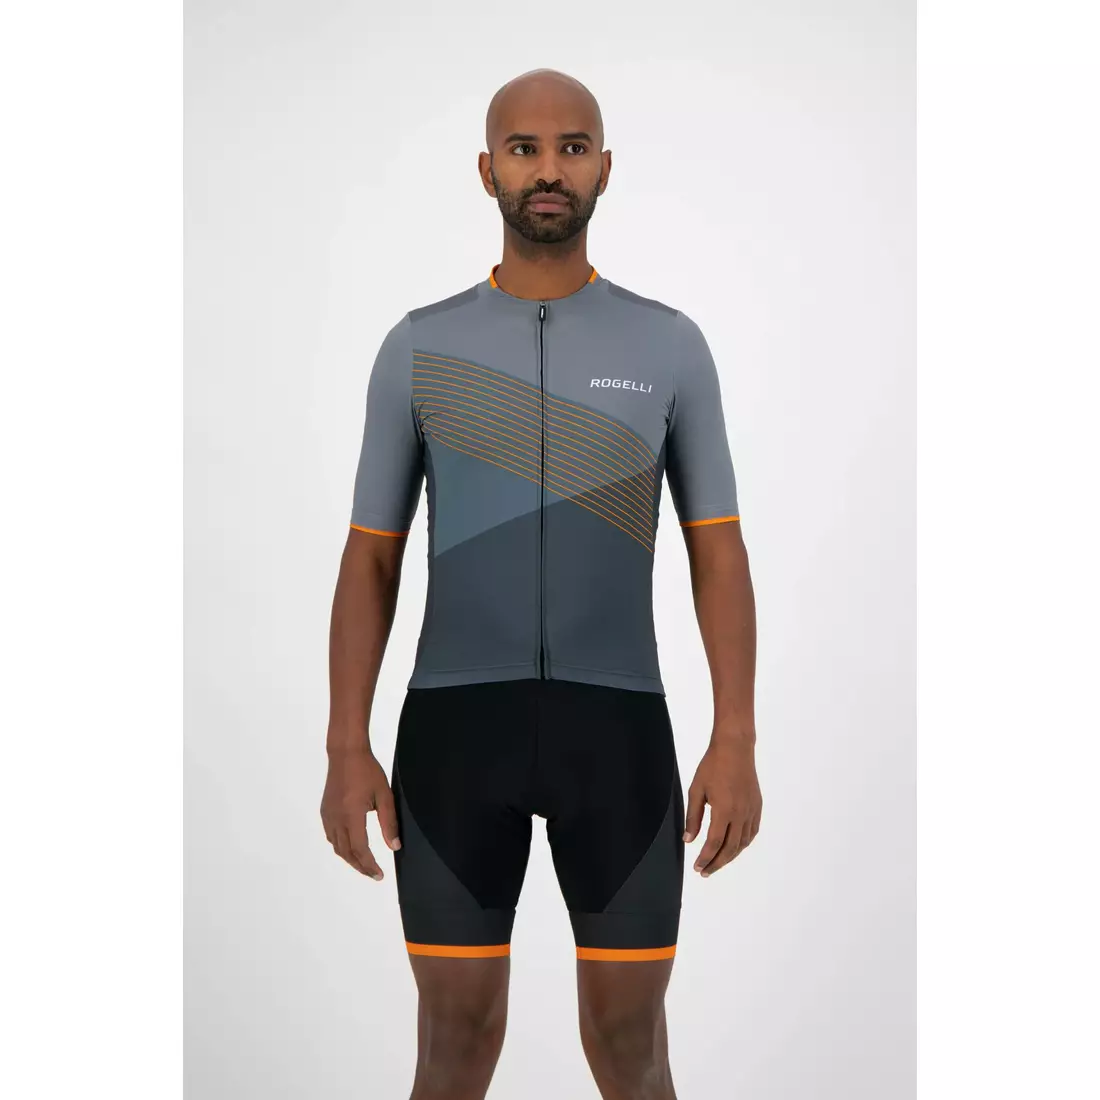 ROGELLI tricou pentru bărbați pentru biciclete SPIKE grey/orange 001.337